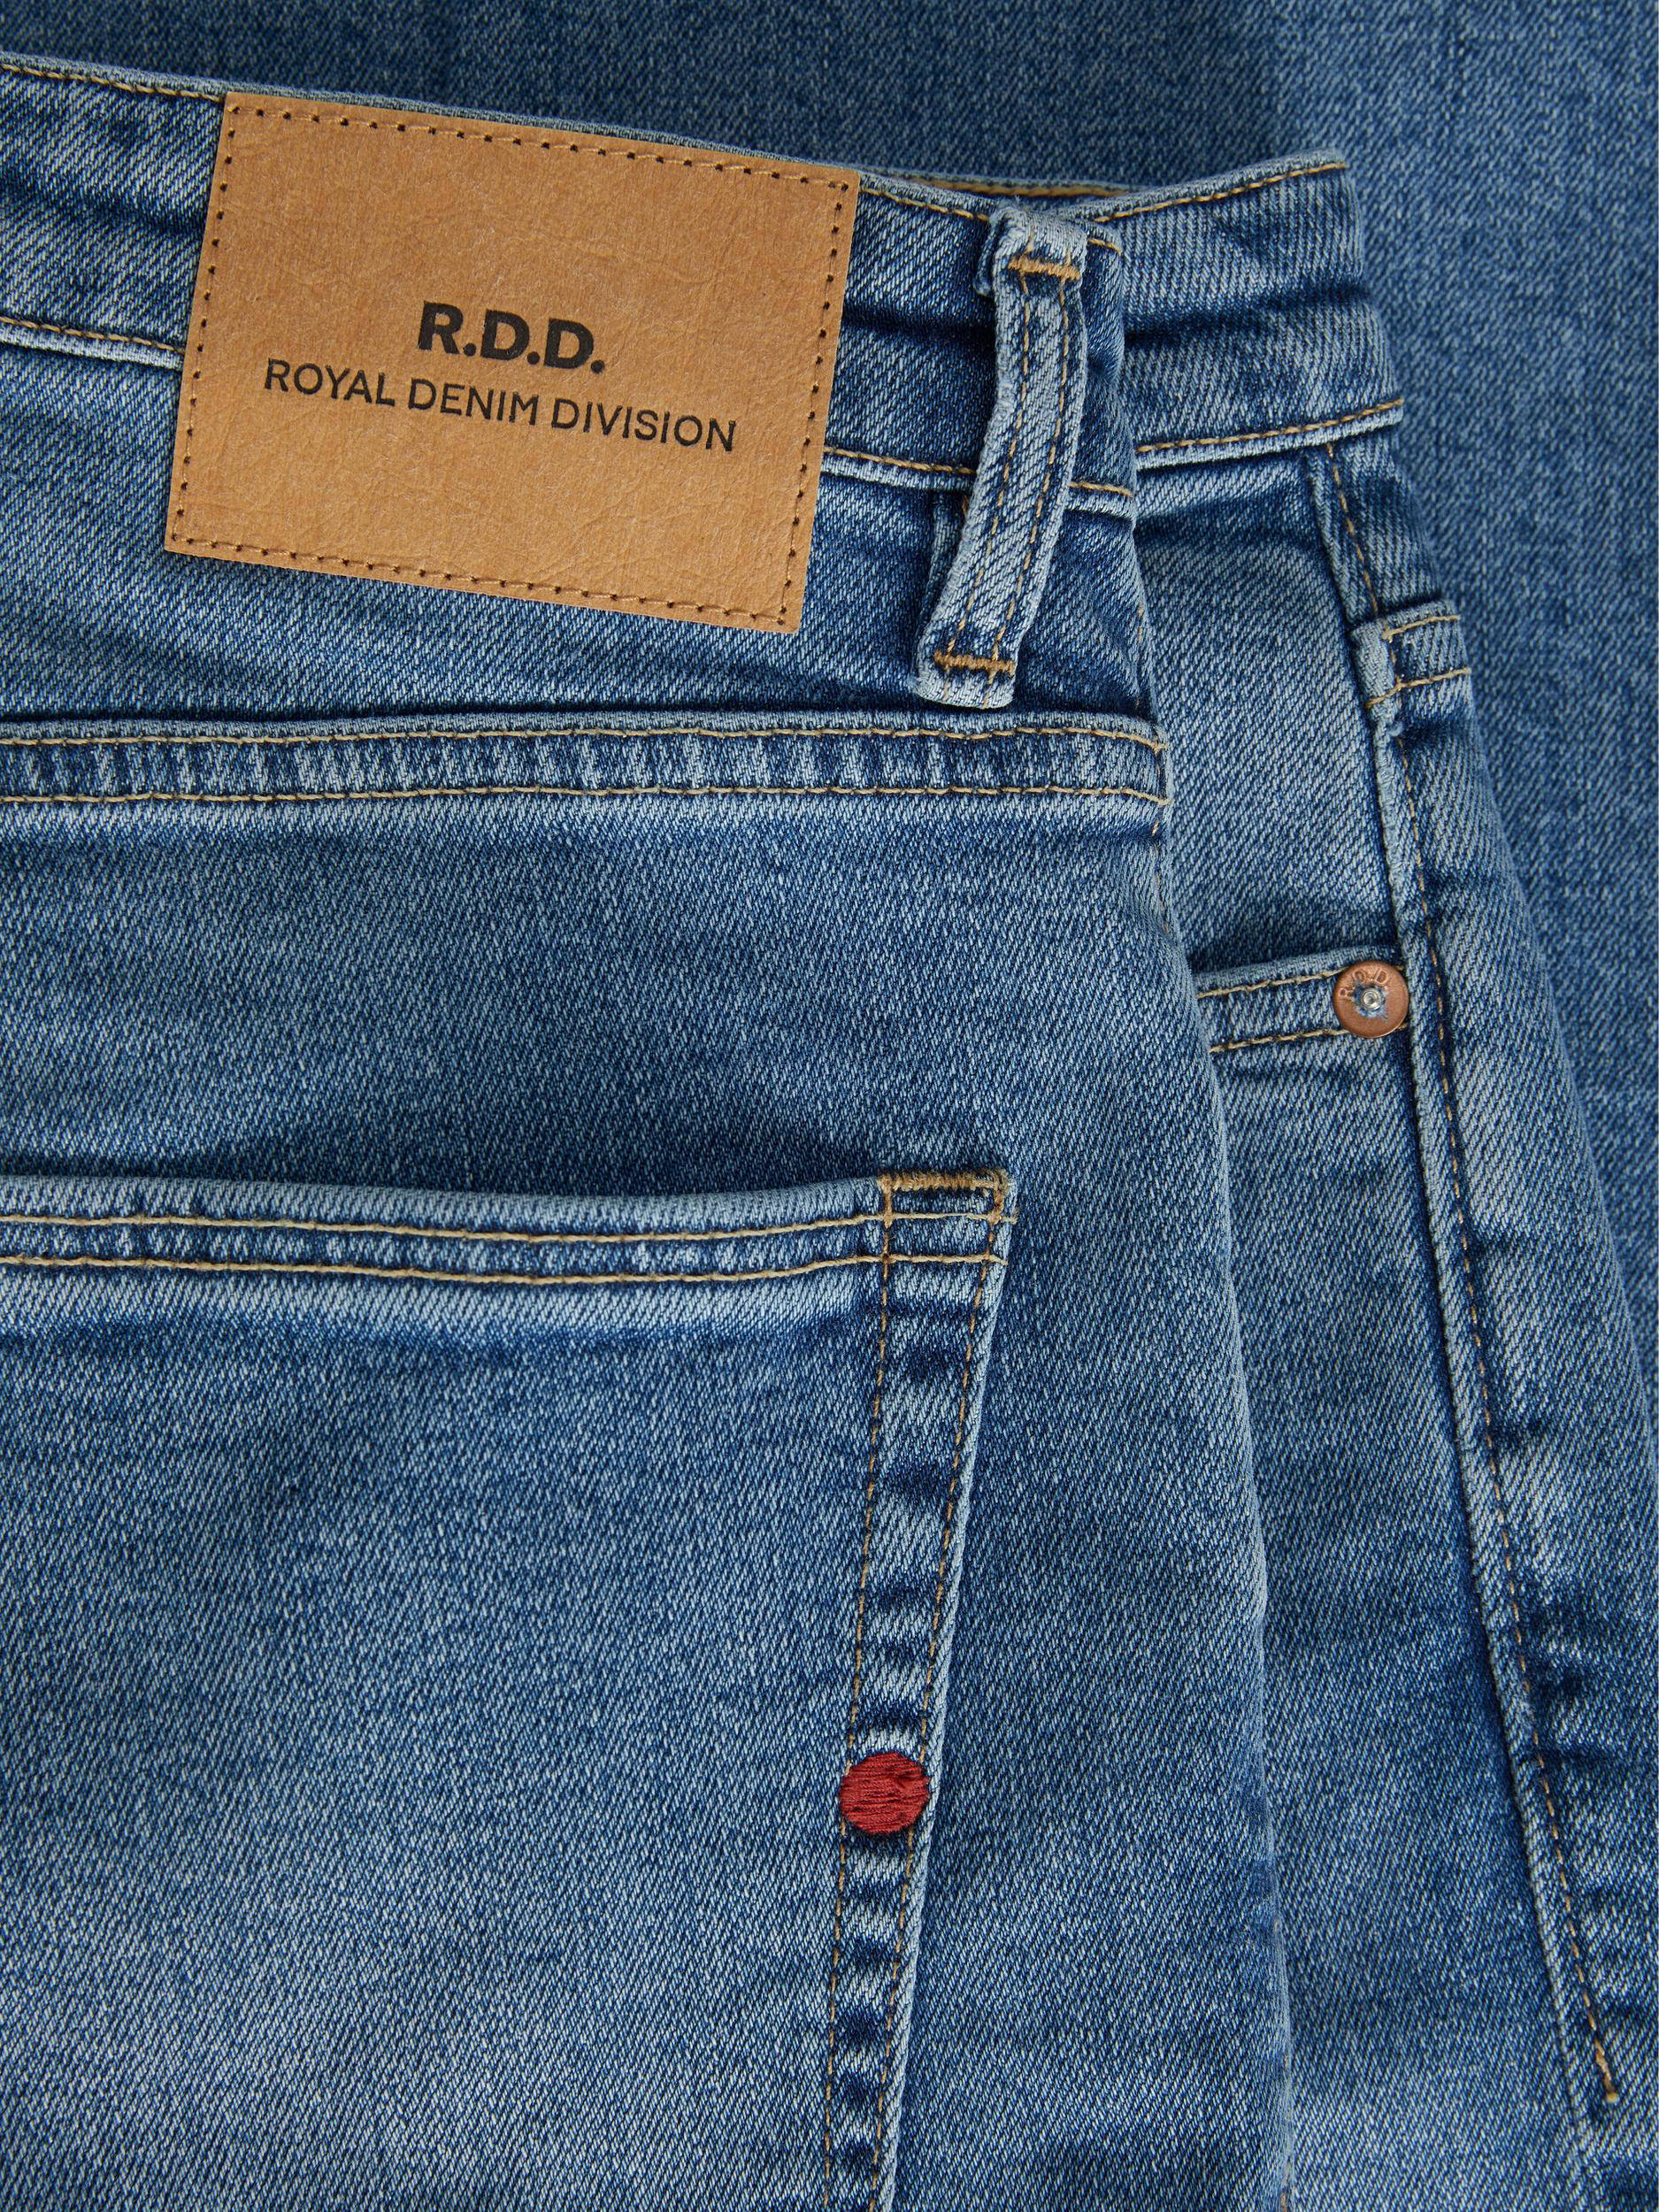 Royal Denim Division Jeans 12243487 | Mijn Modewereld